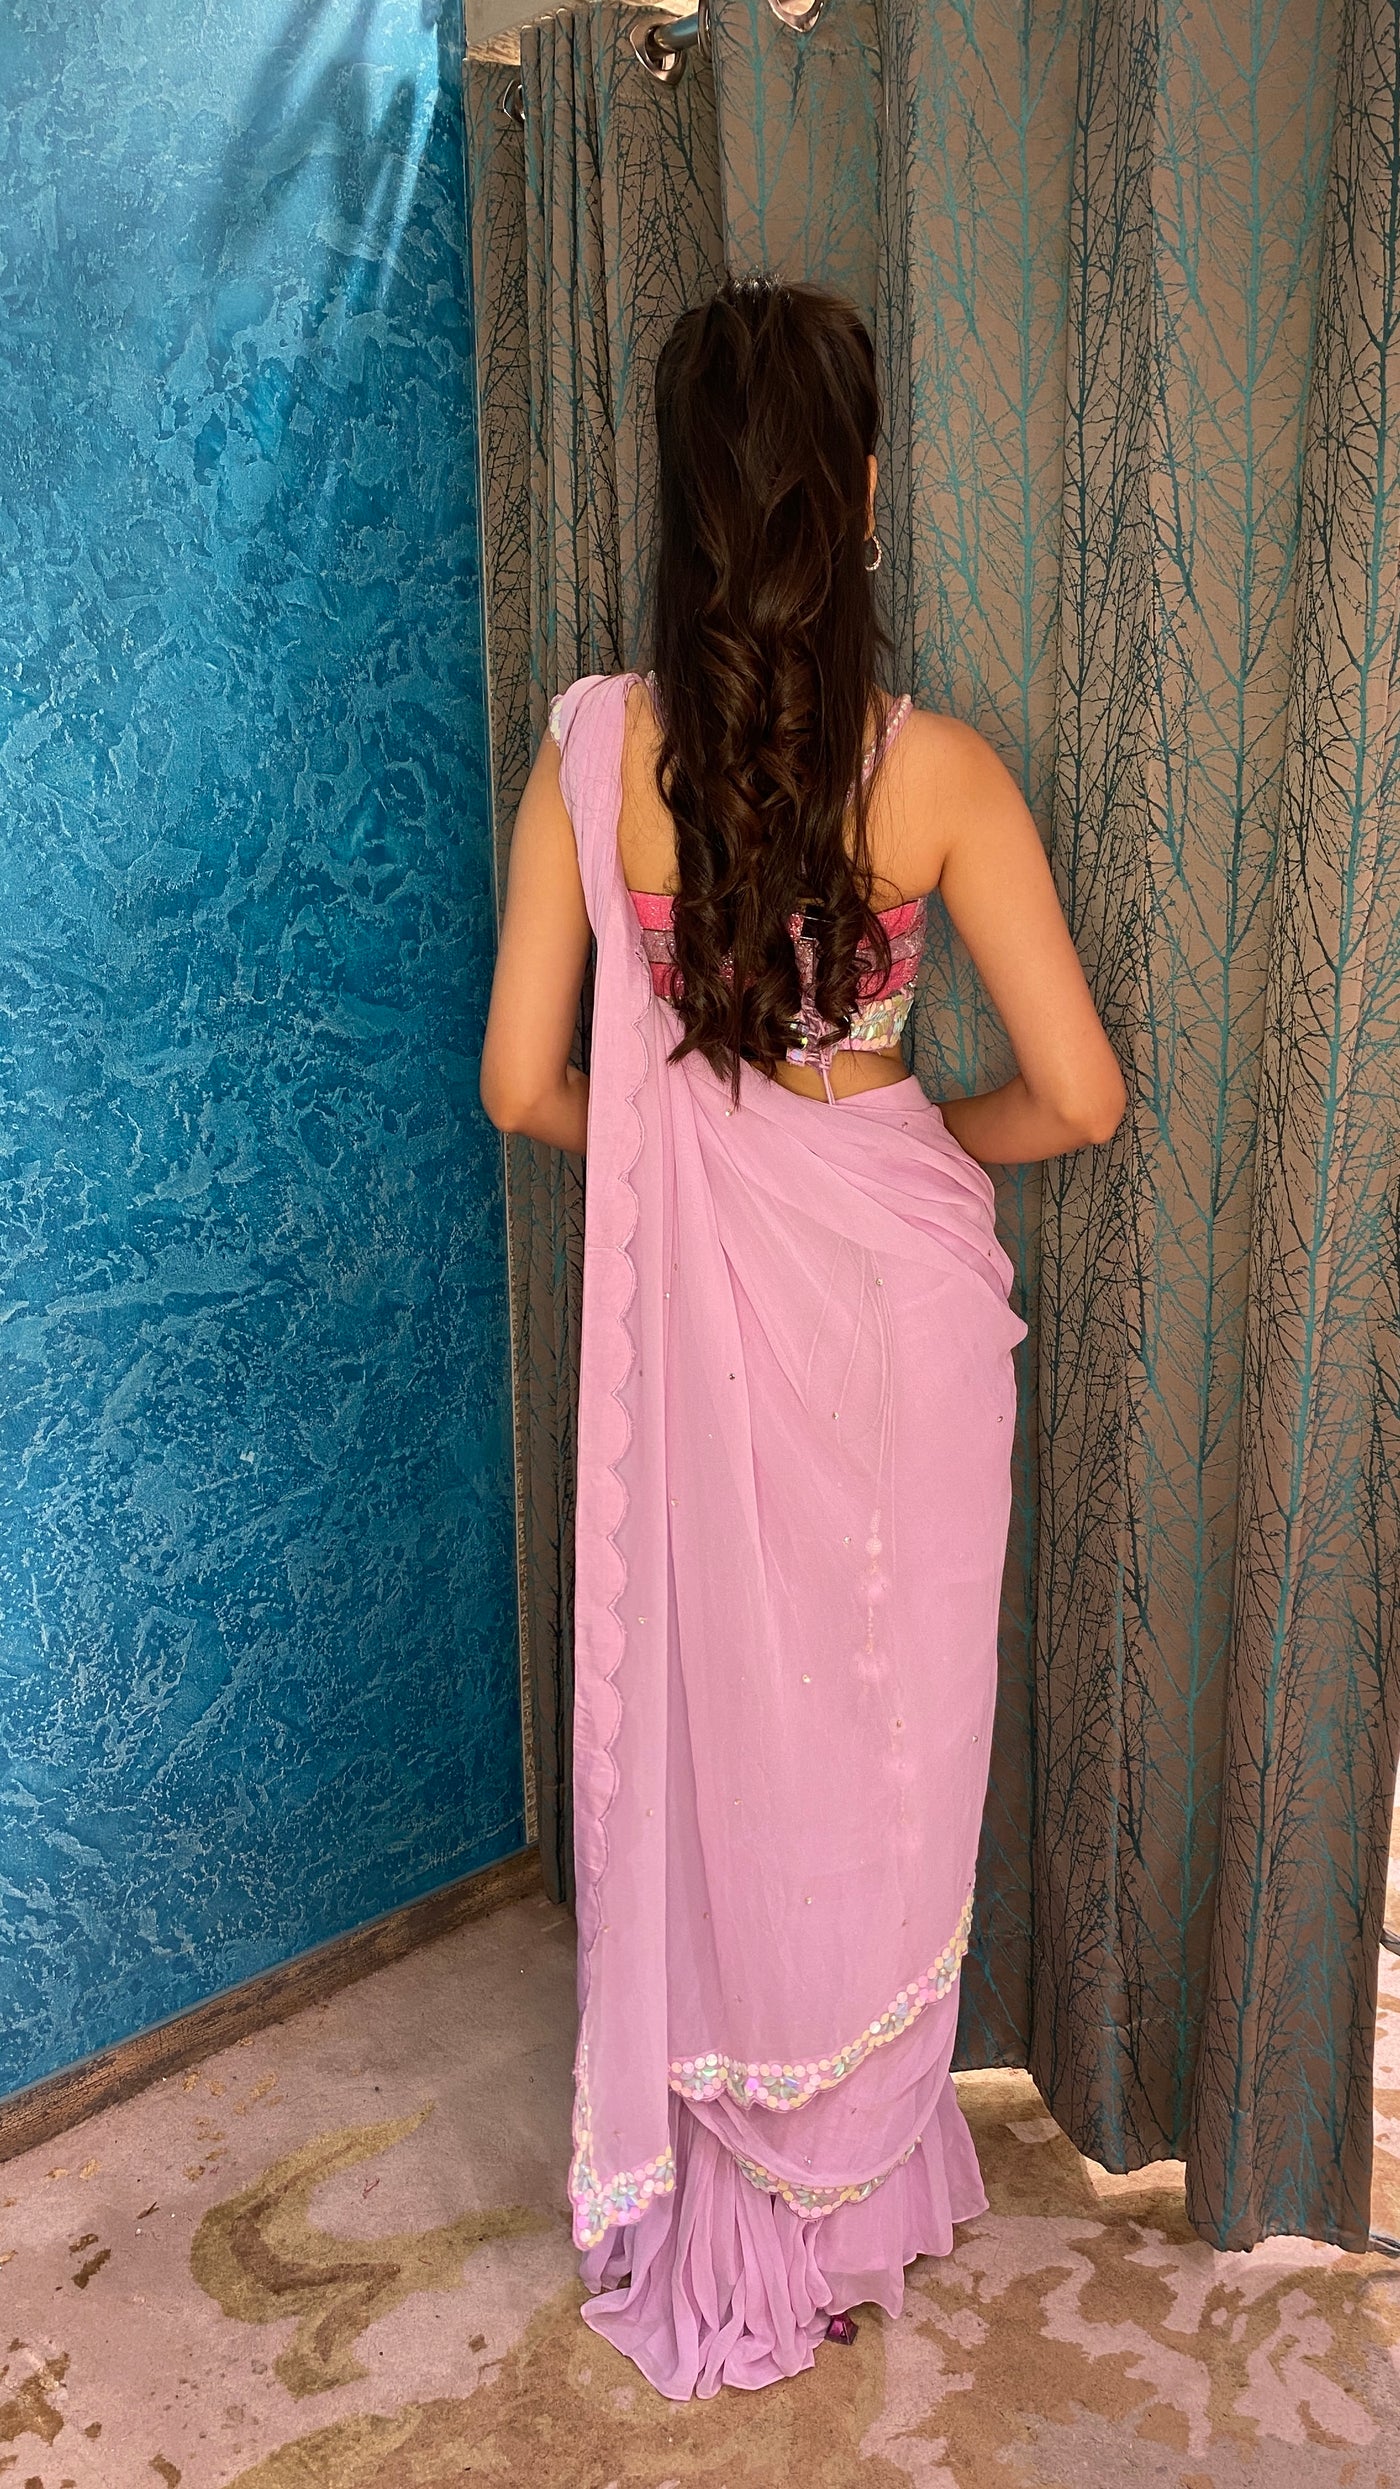 Beautiful pink color floral motif embroidered sharara with drape dupatta cum drape saree